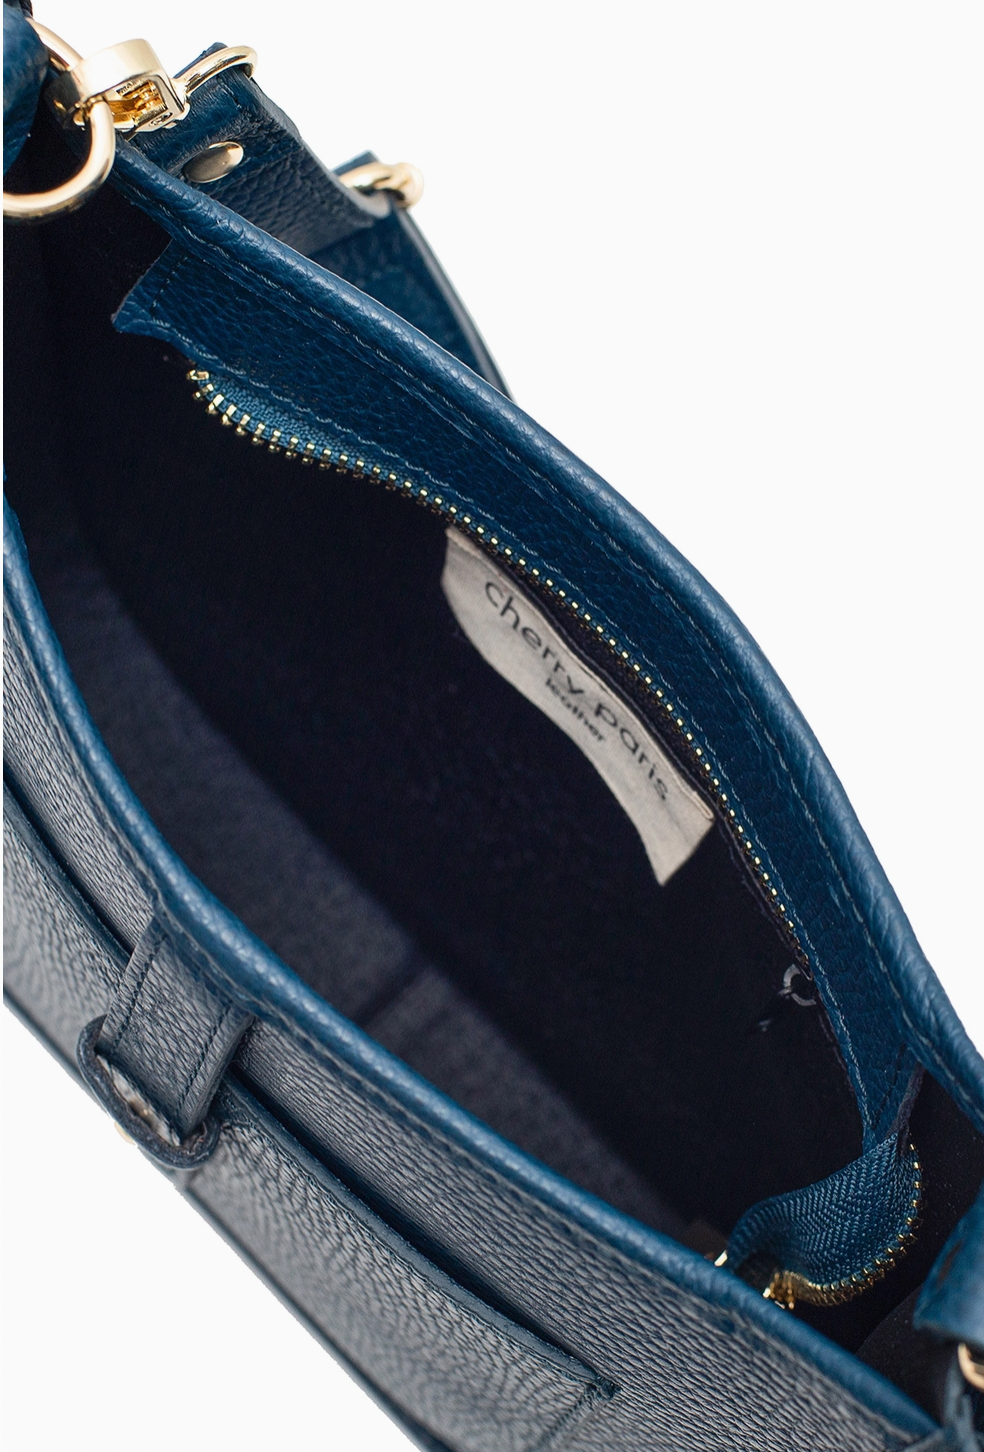 Leather zip top handbag in petrol blue